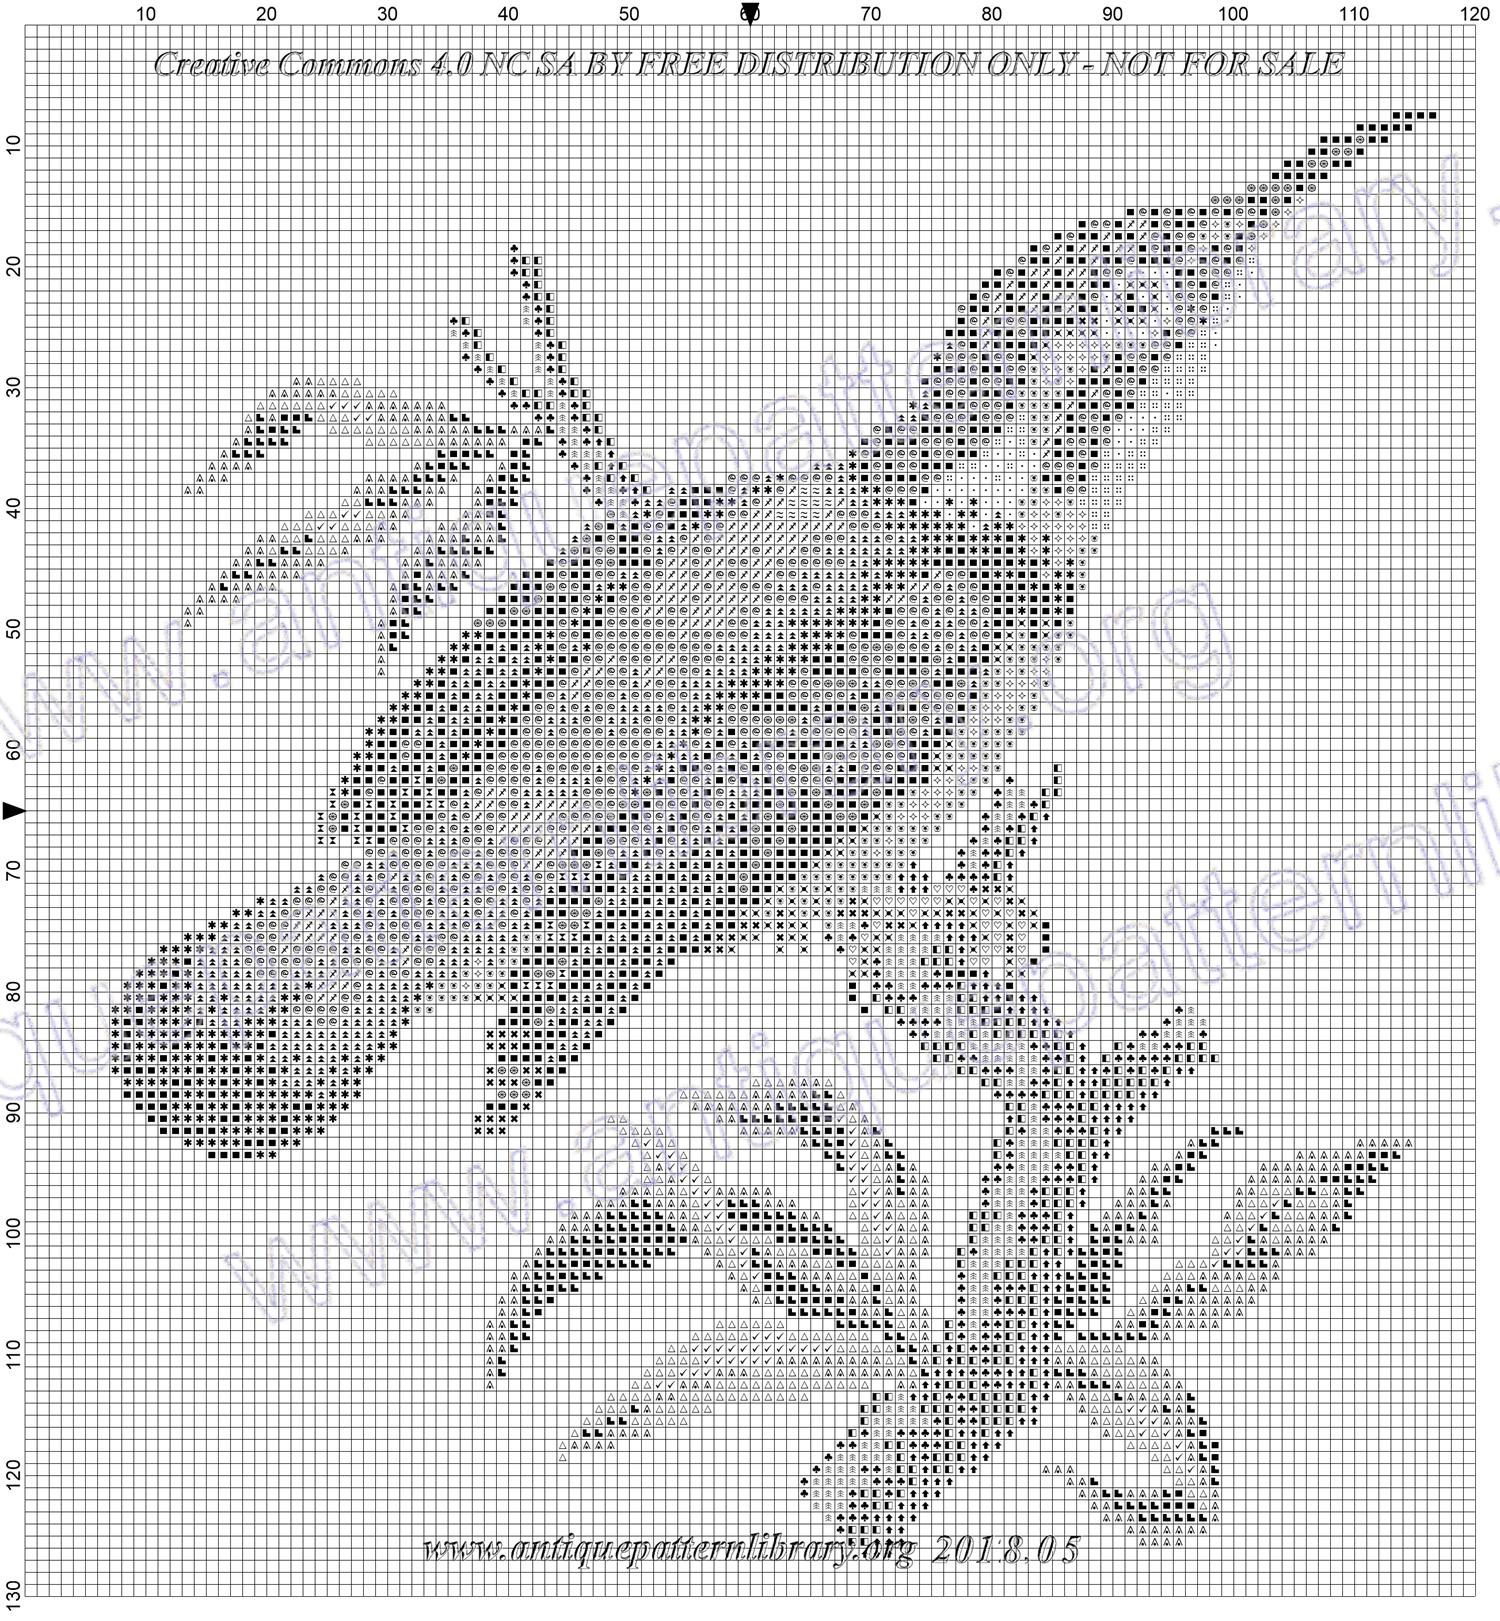 I-WM004 Kingfisher